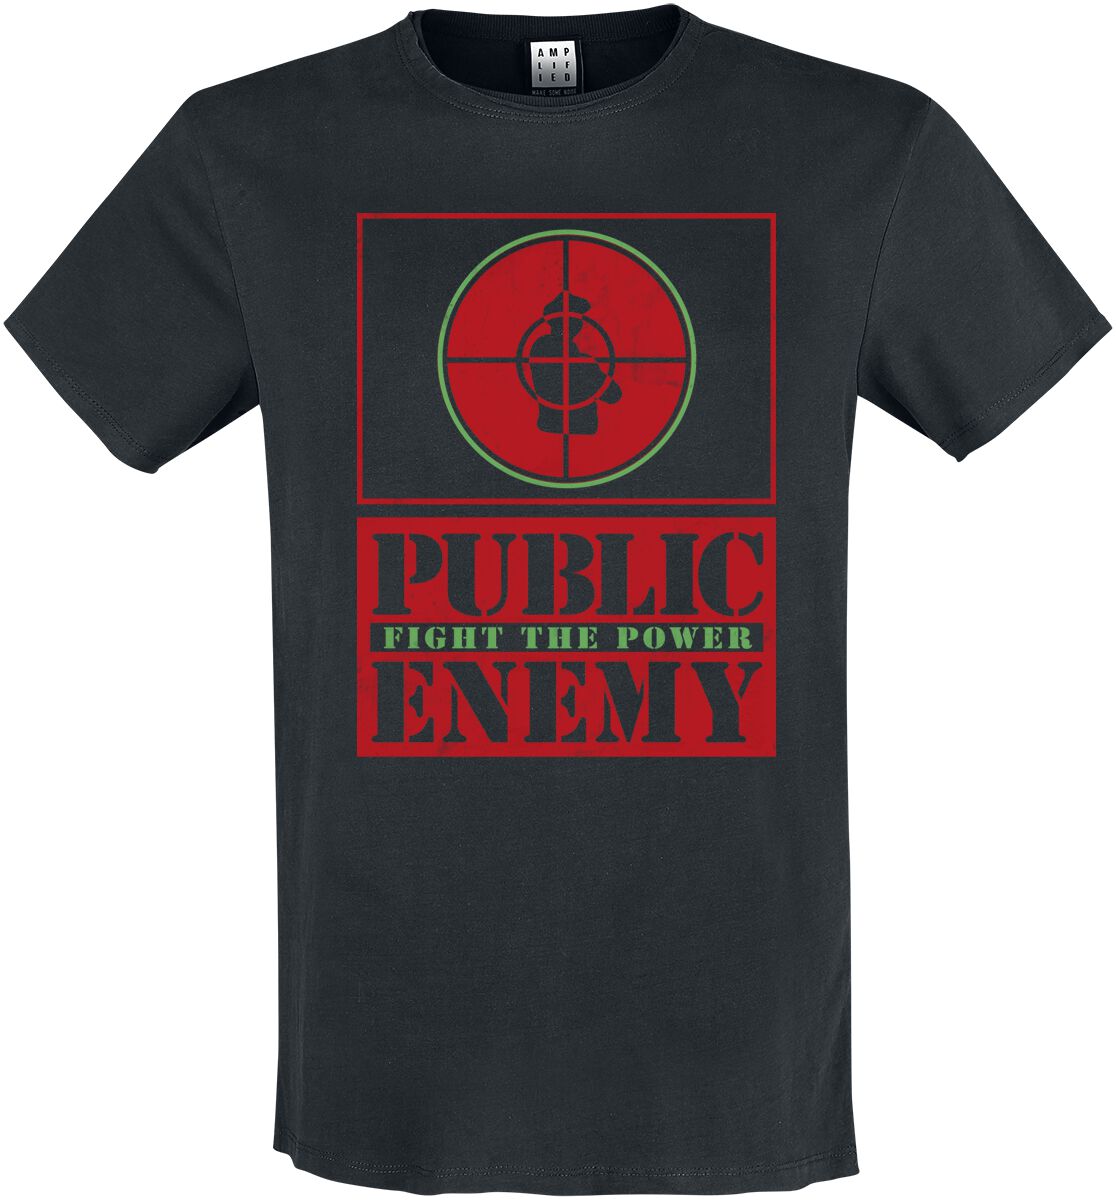 Public Enemy T-Shirt - Amplified Collection - Fight The Power Target - S - für Männer - Größe S - schwarz  - Lizenziertes Merchandise!